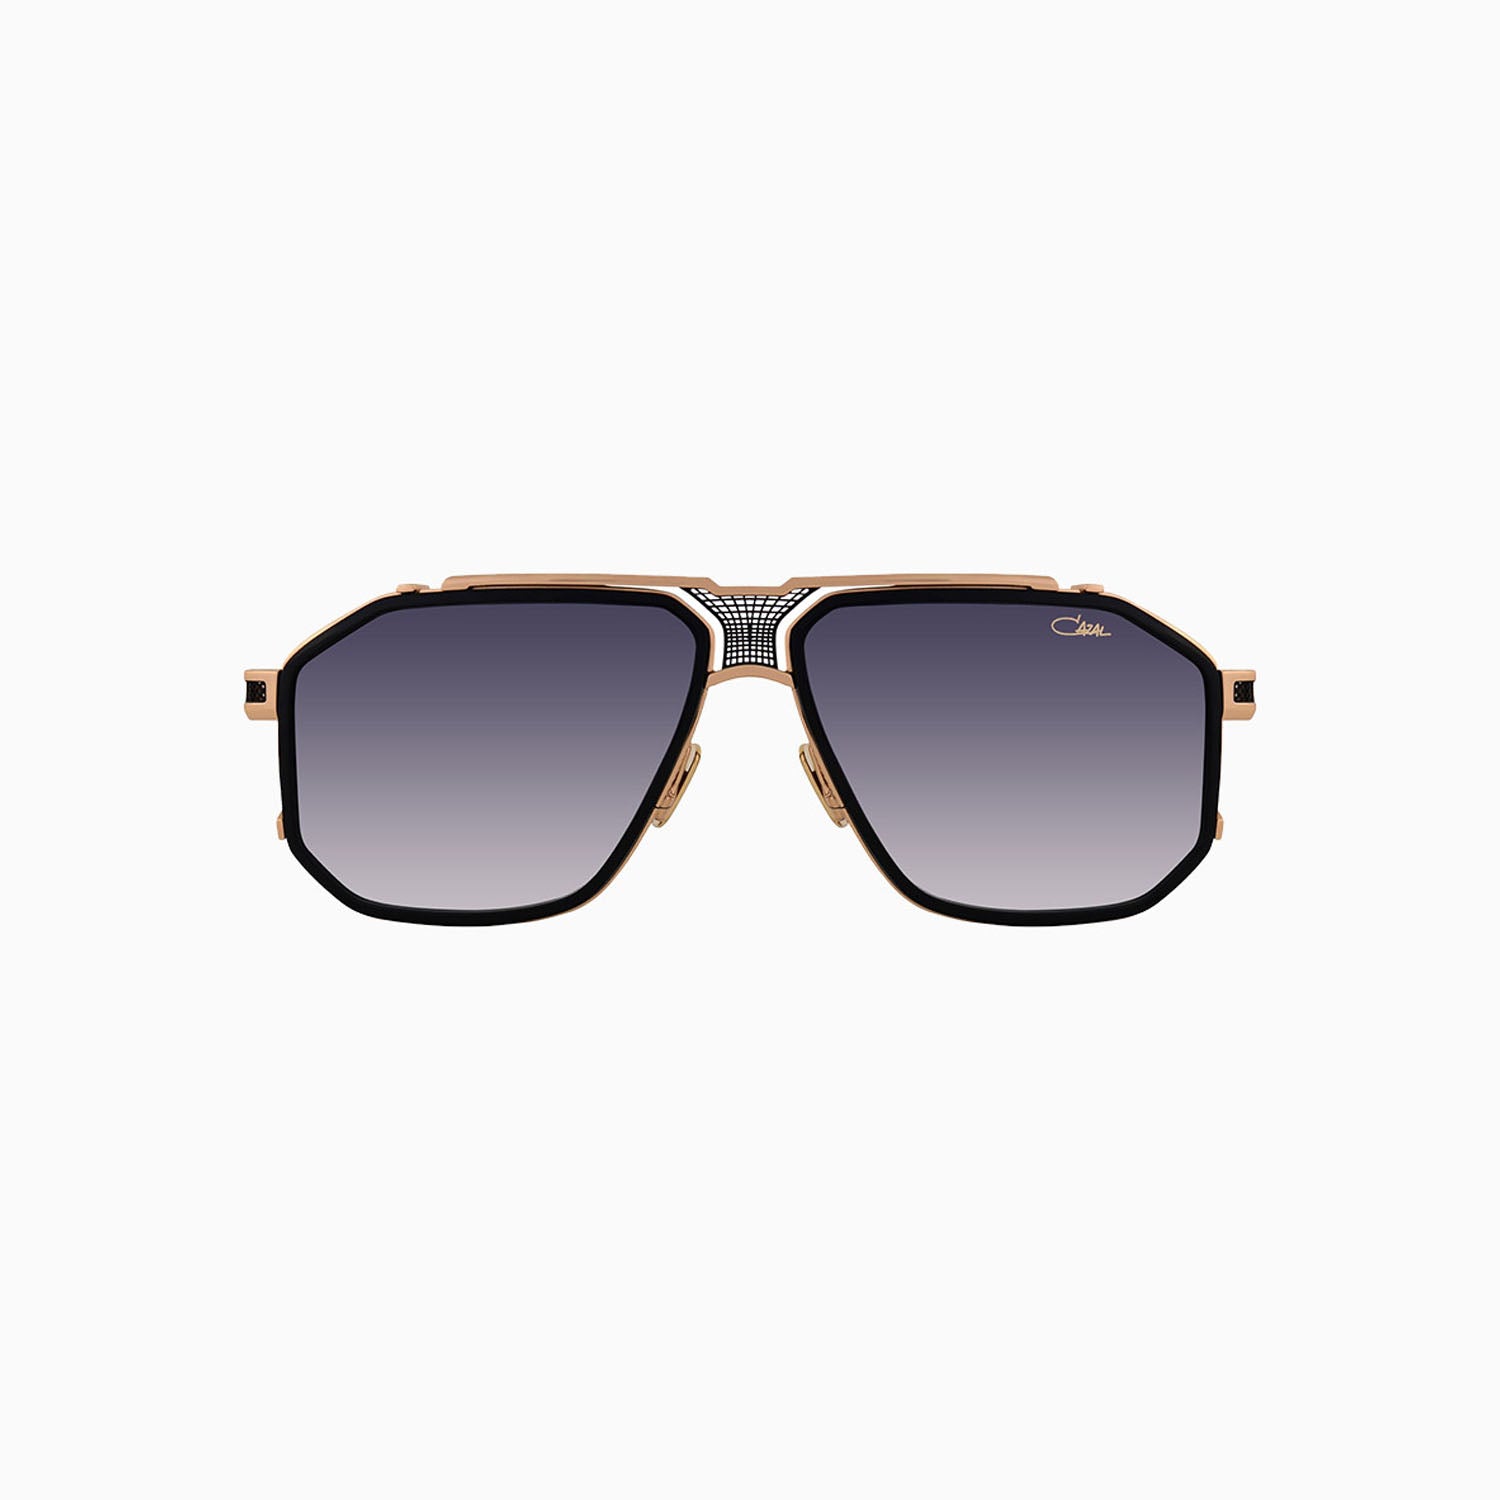 cazal-eyewear-mod-683-cazal-black-gold-sunglasses-cazal-683-001